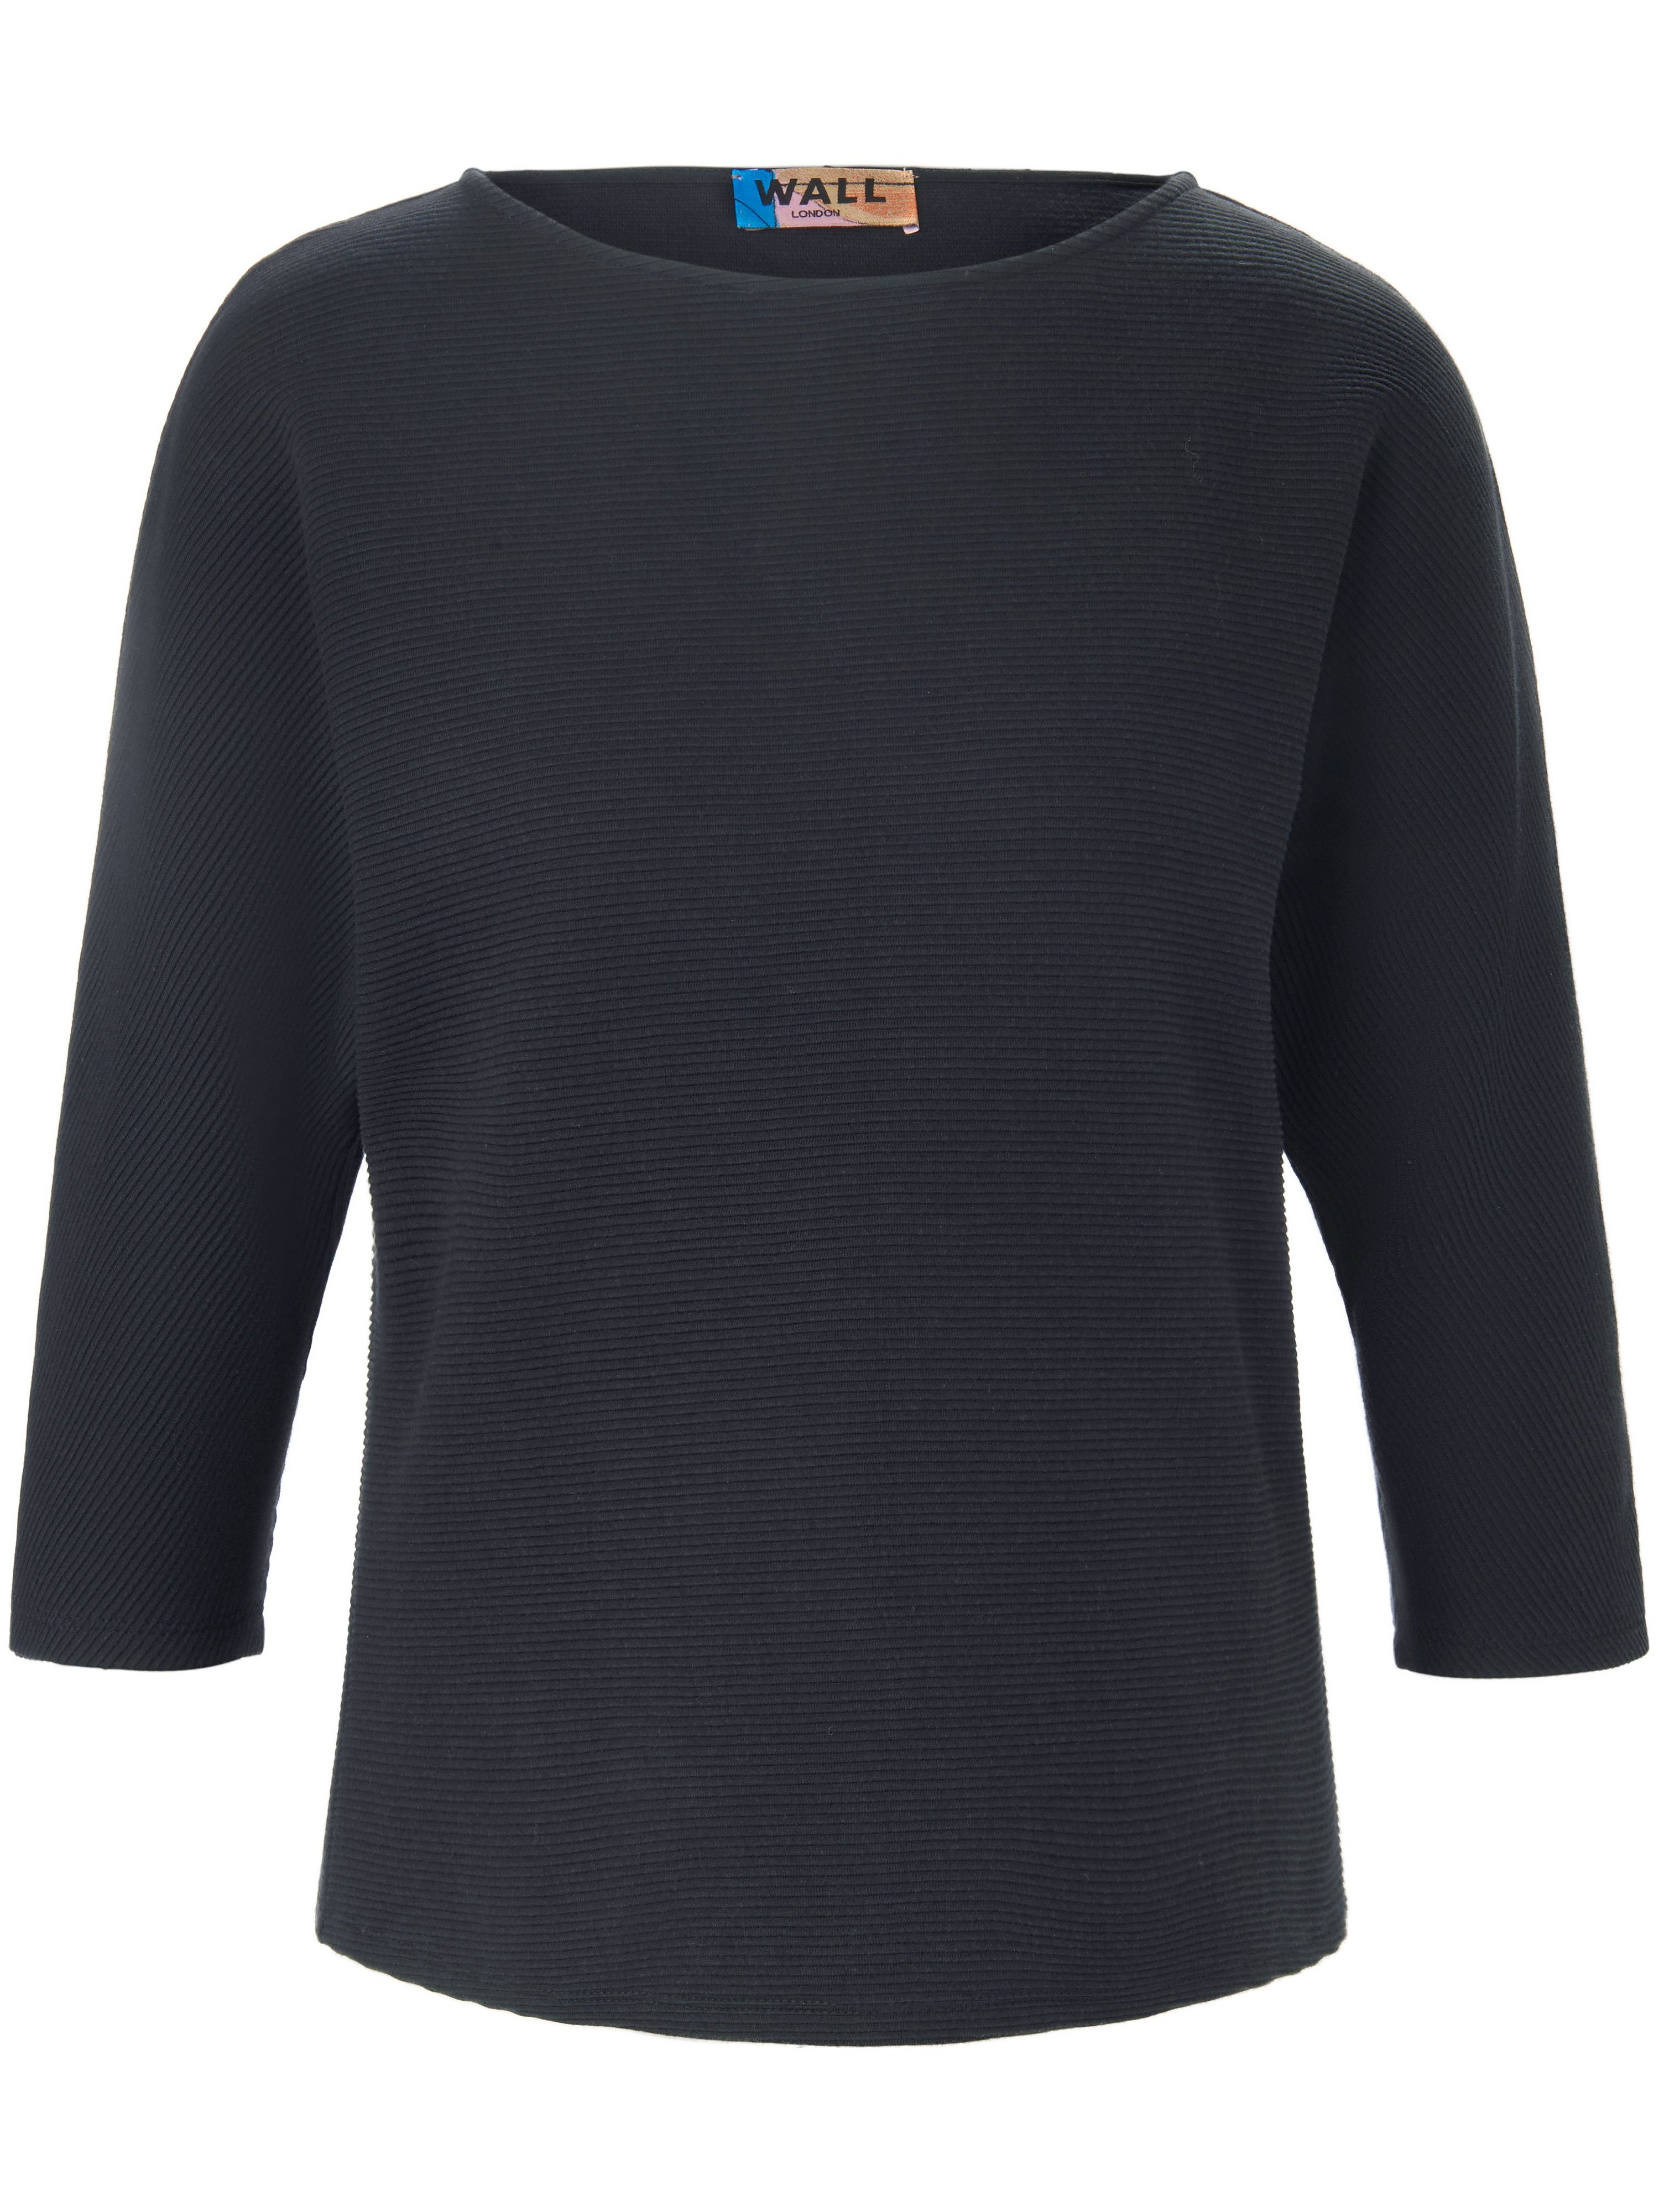 Le T-shirt 100% coton  WALL London noir taille 38